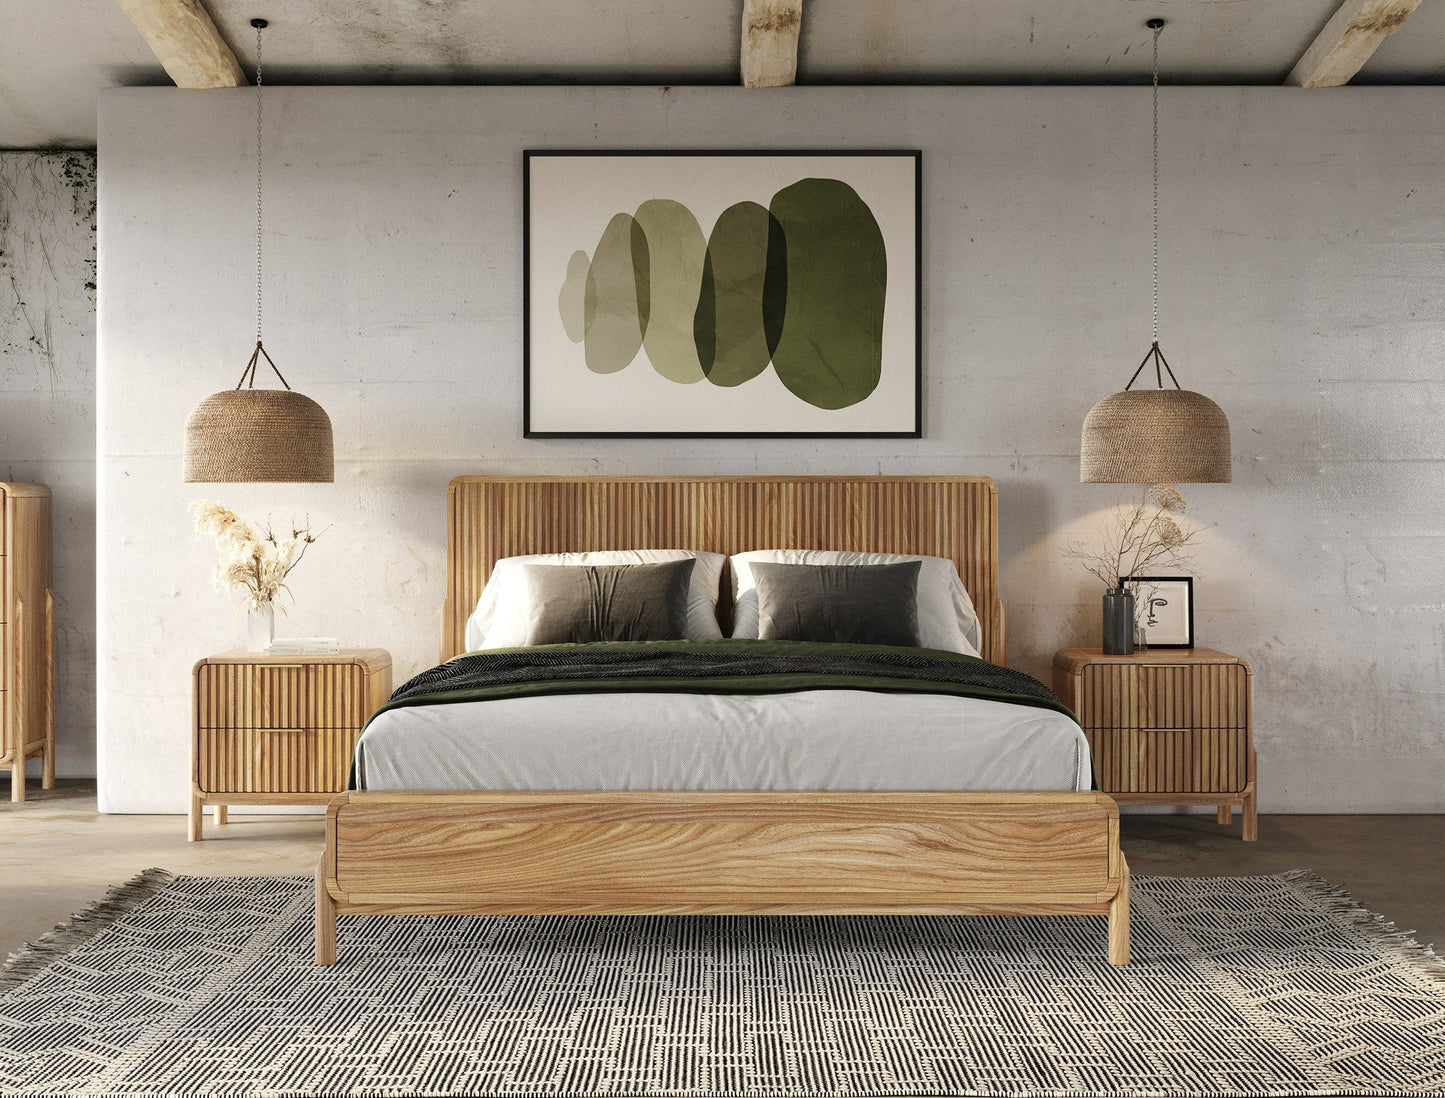 Modrest Mikala - Modern Natural Oak Bedroom Set